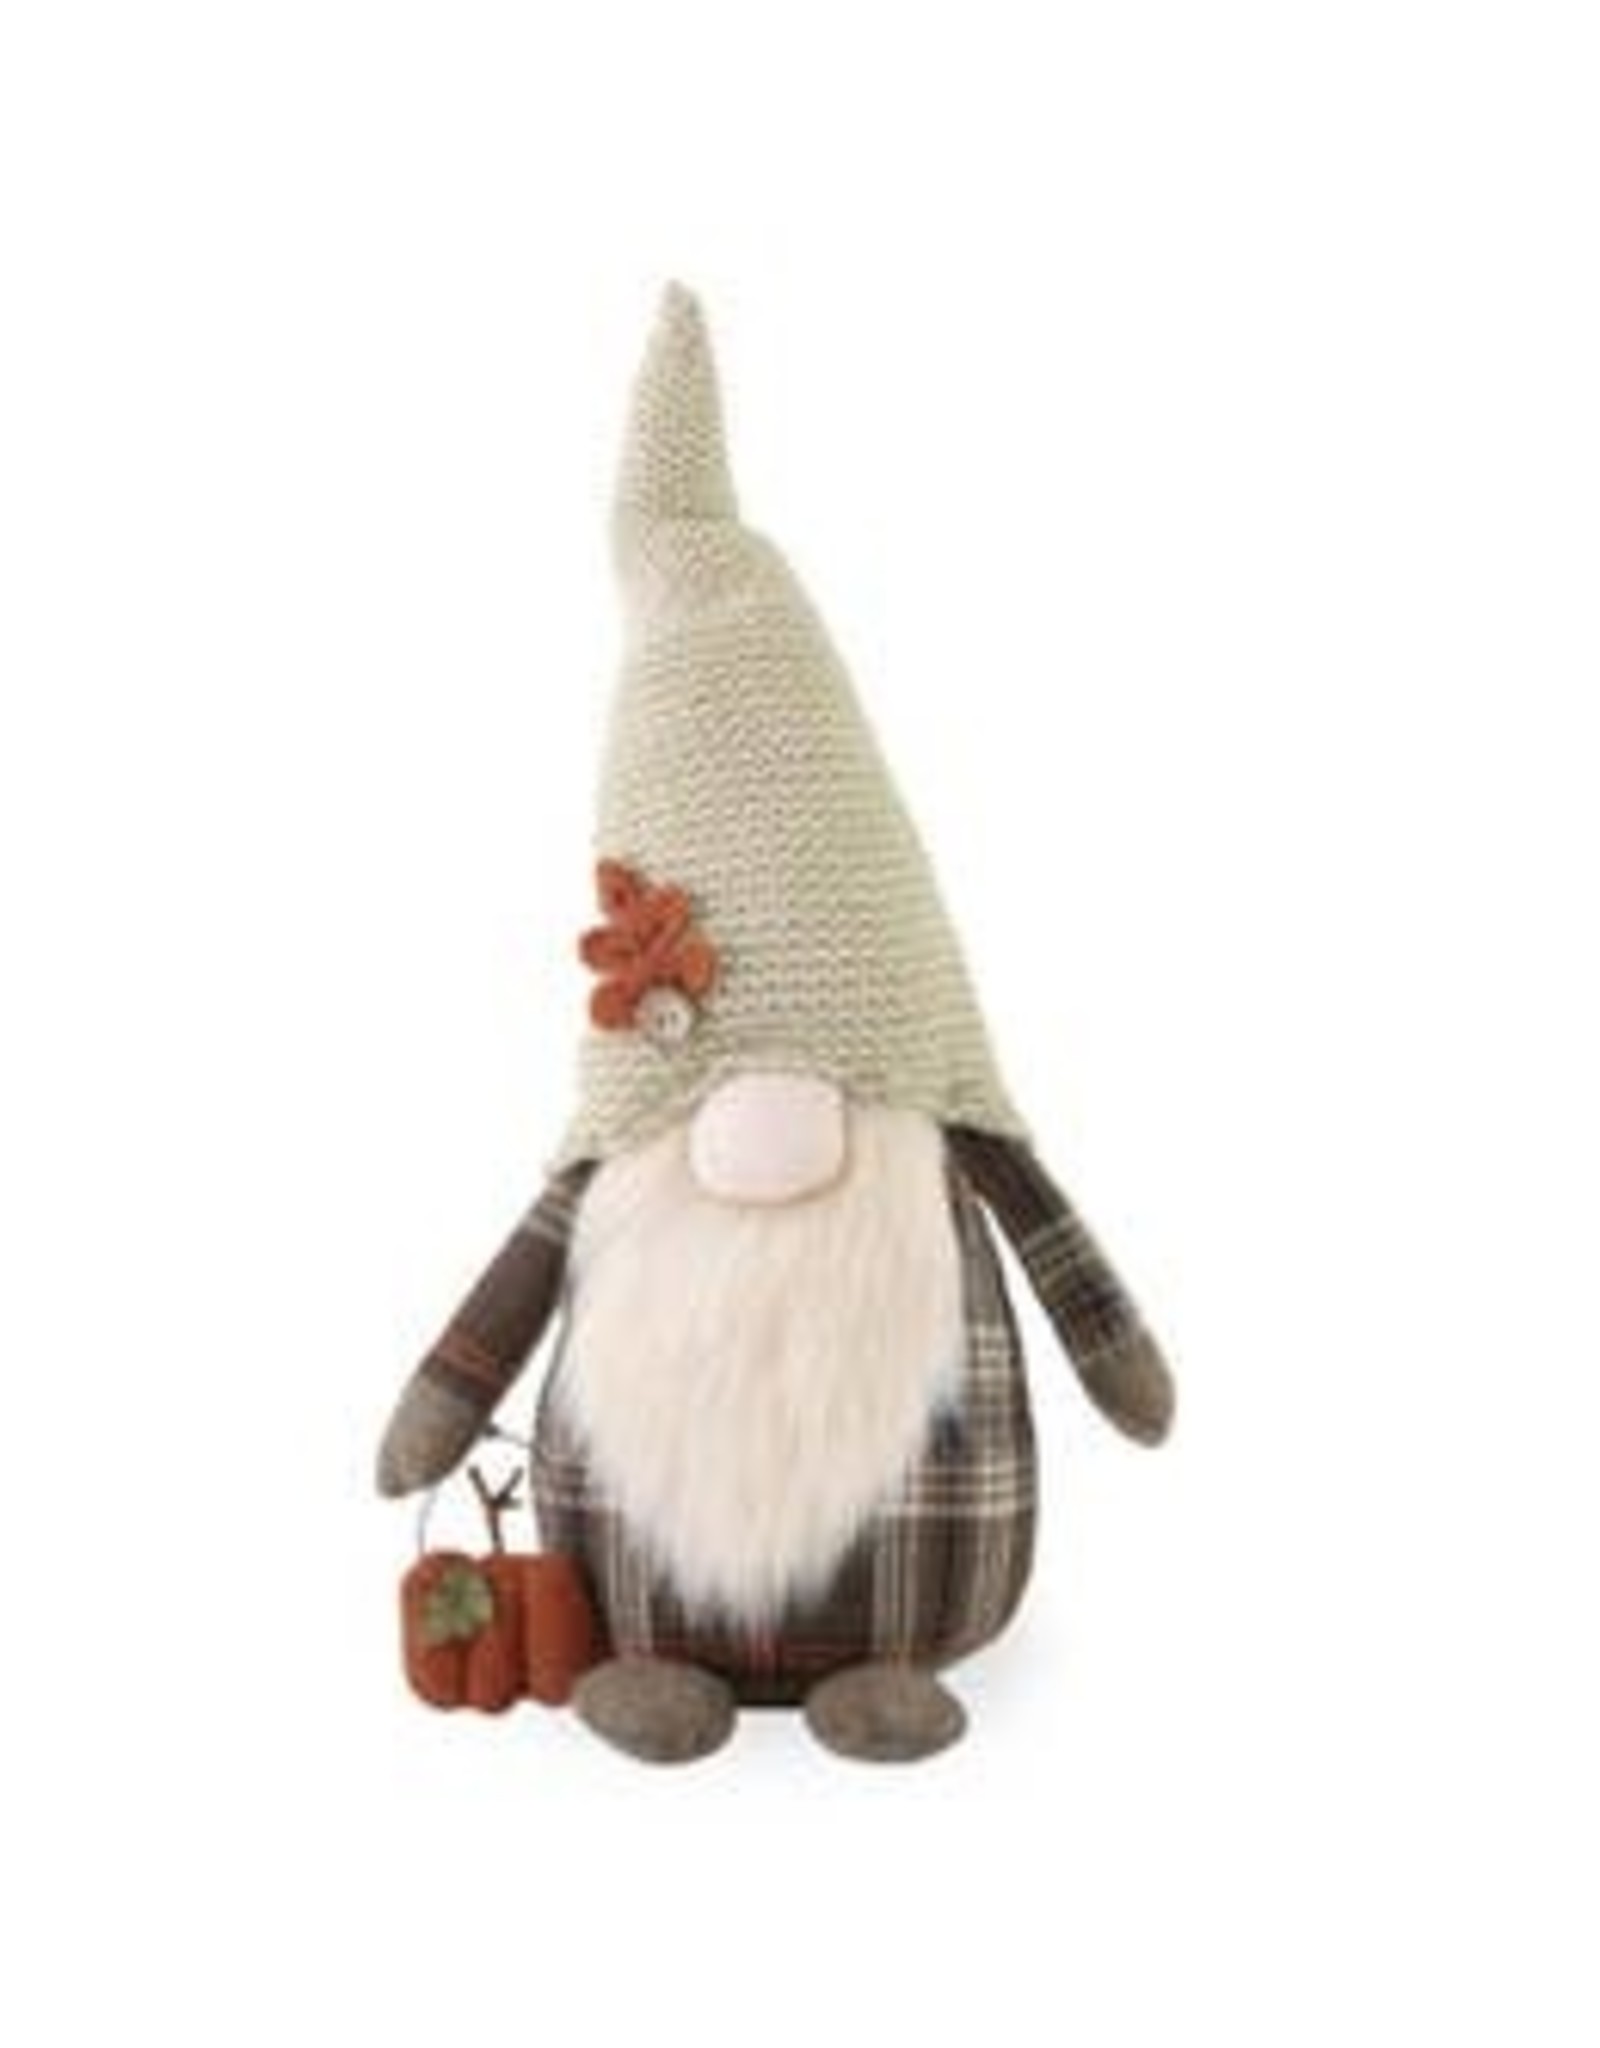 Abner Autumn Plaid Gnome